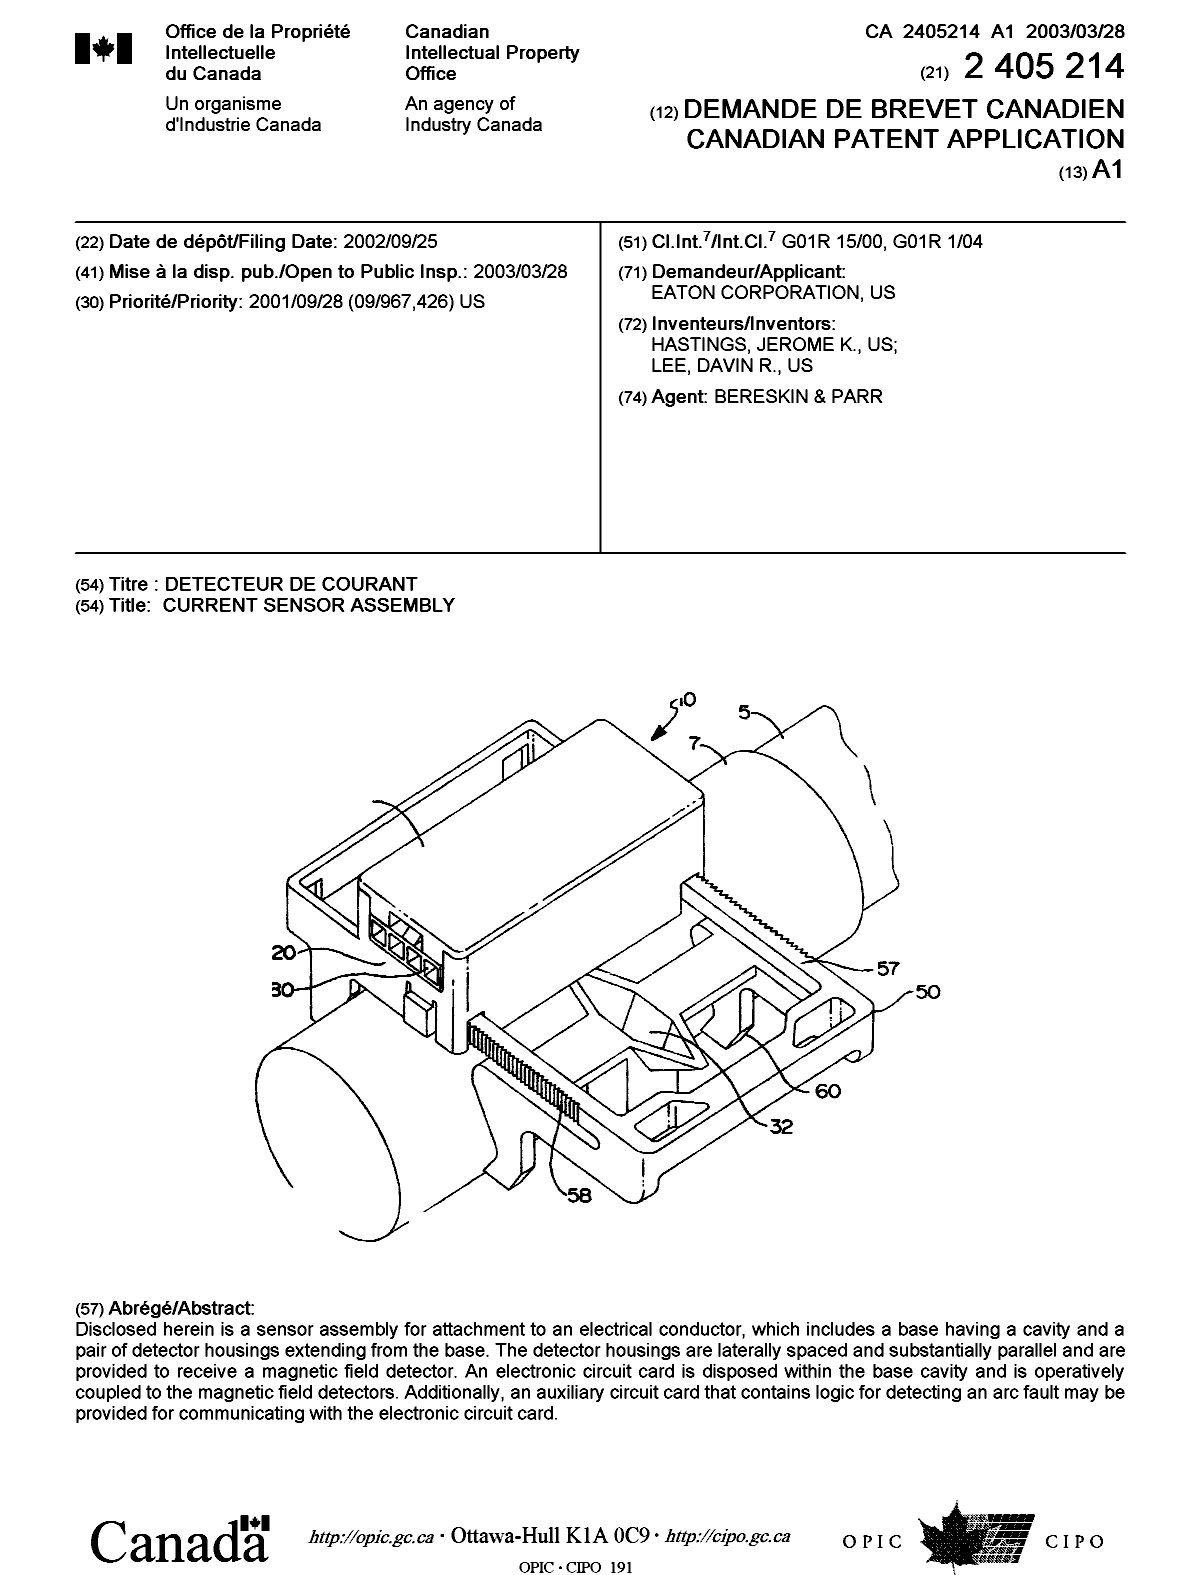 Document de brevet canadien 2405214. Page couverture 20030304. Image 1 de 1